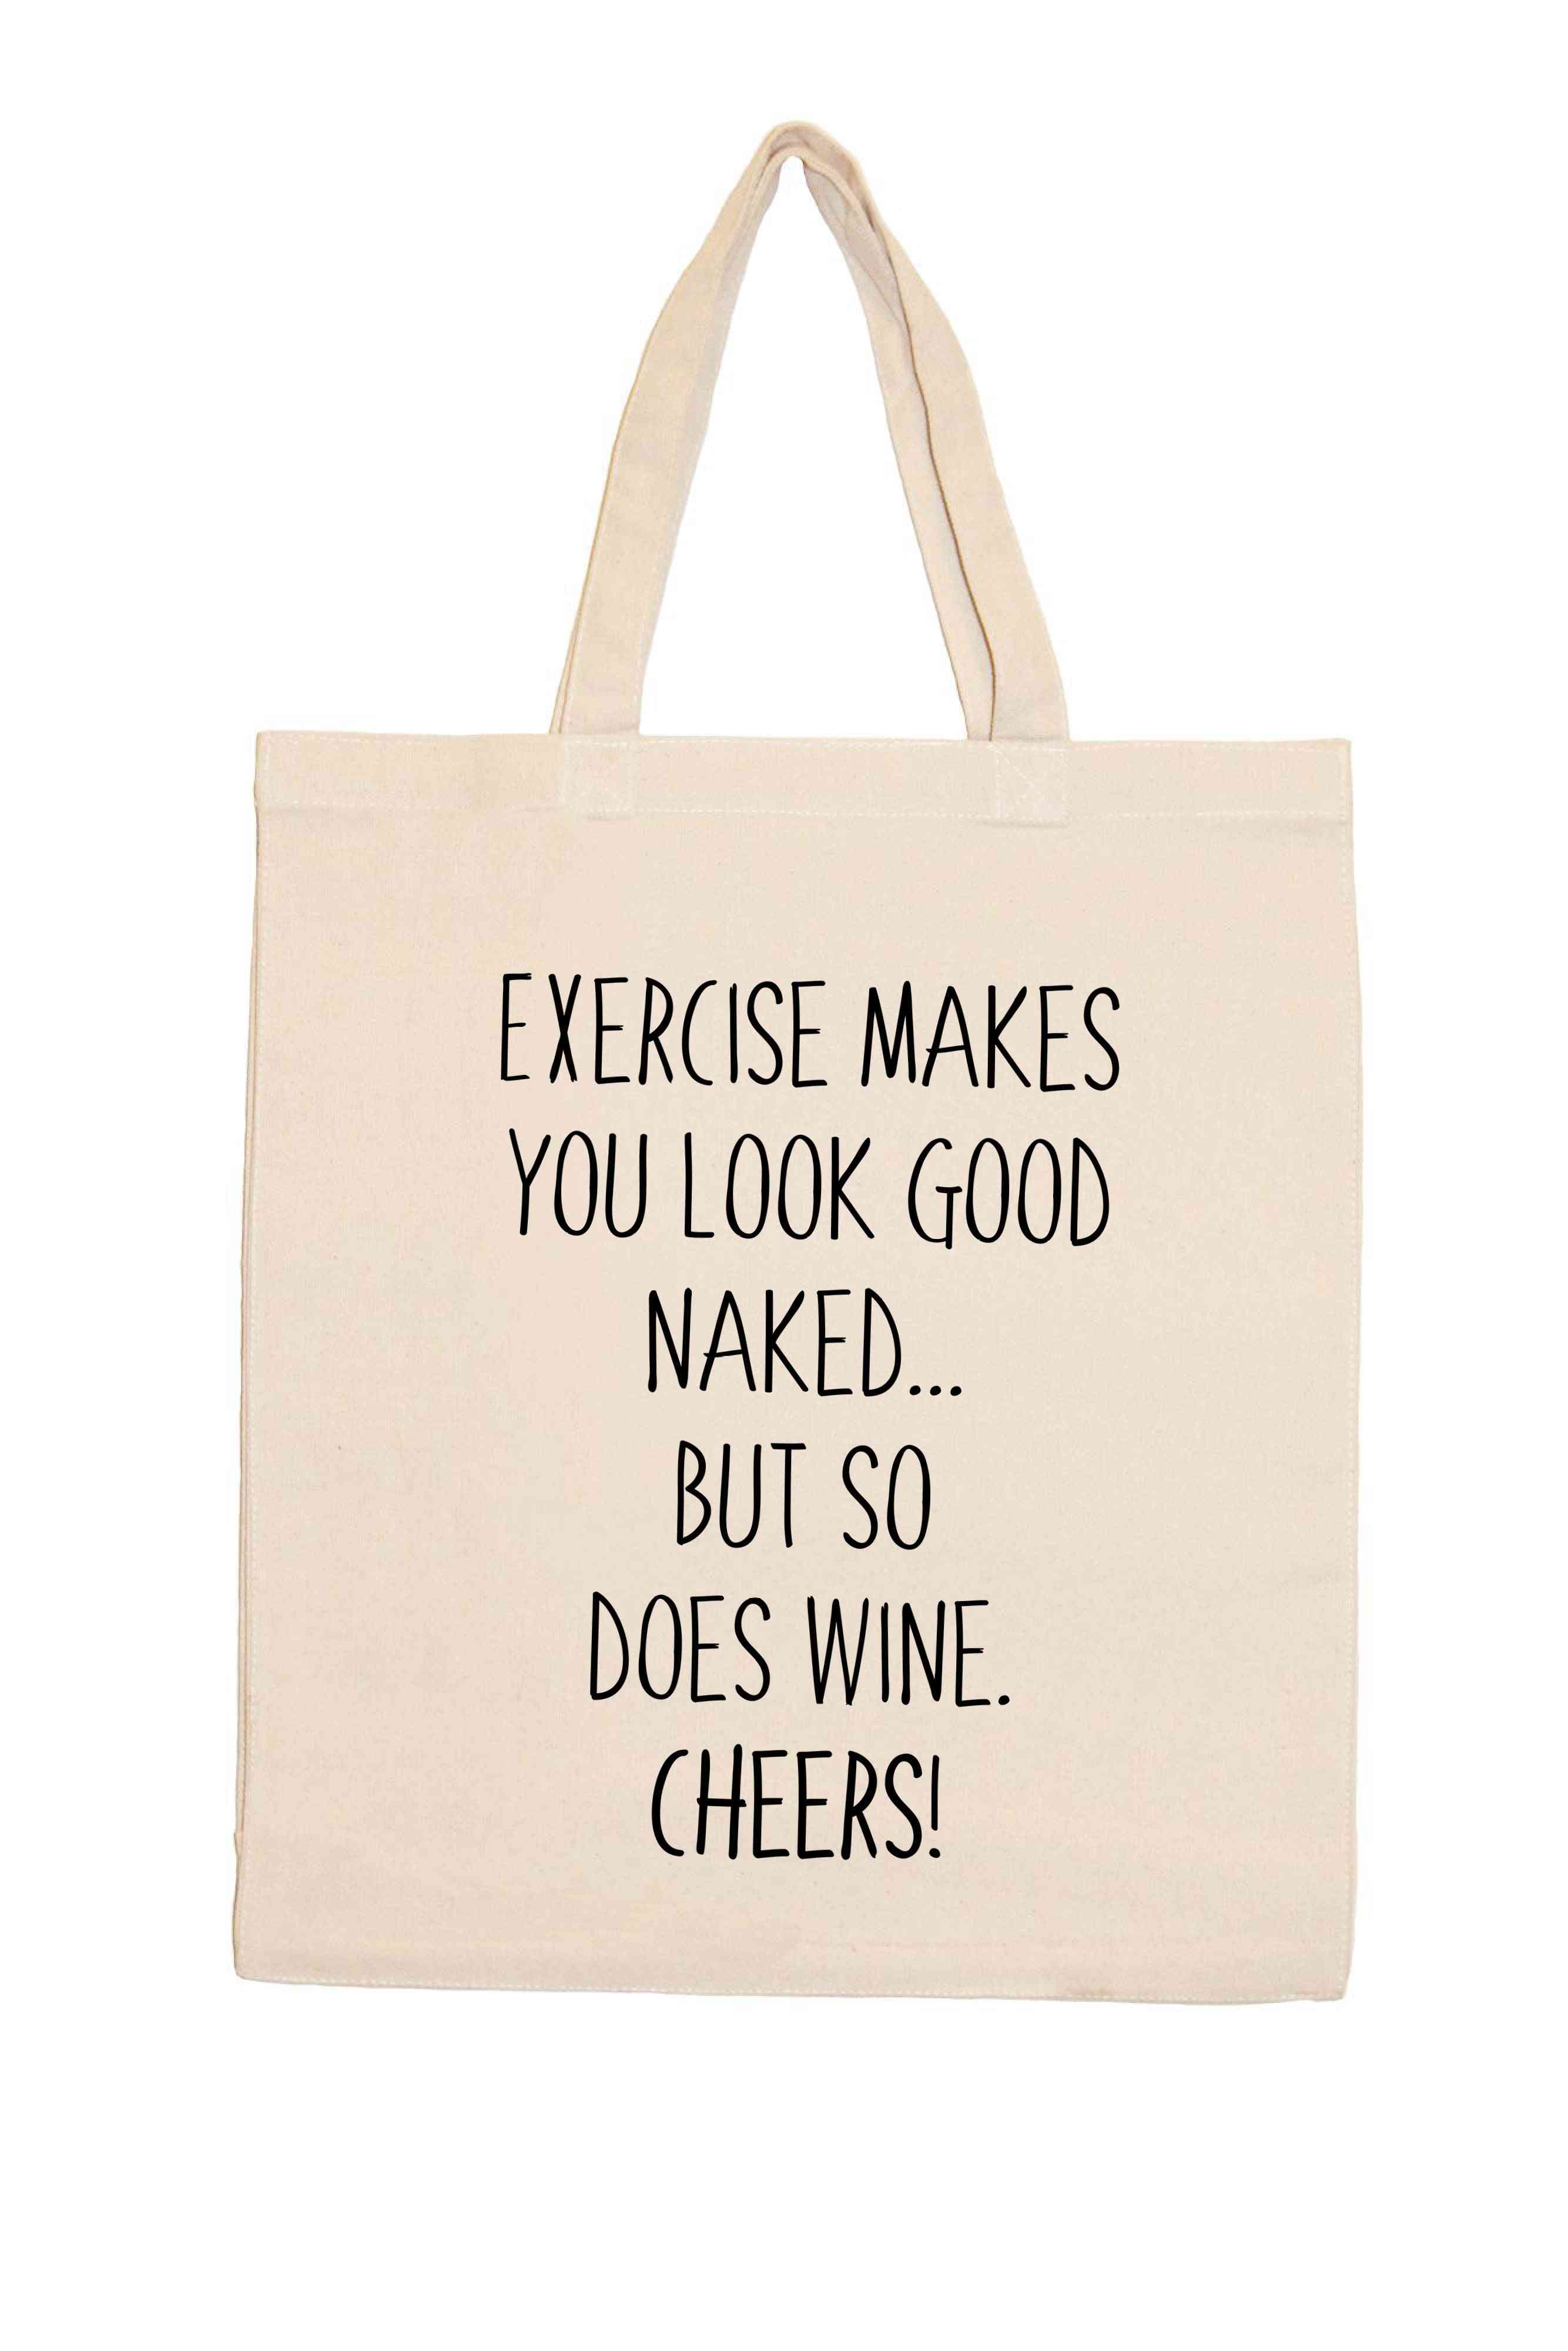 Gyakorlás meztelenül jól nézel ki, de a bor is. Egészségére!